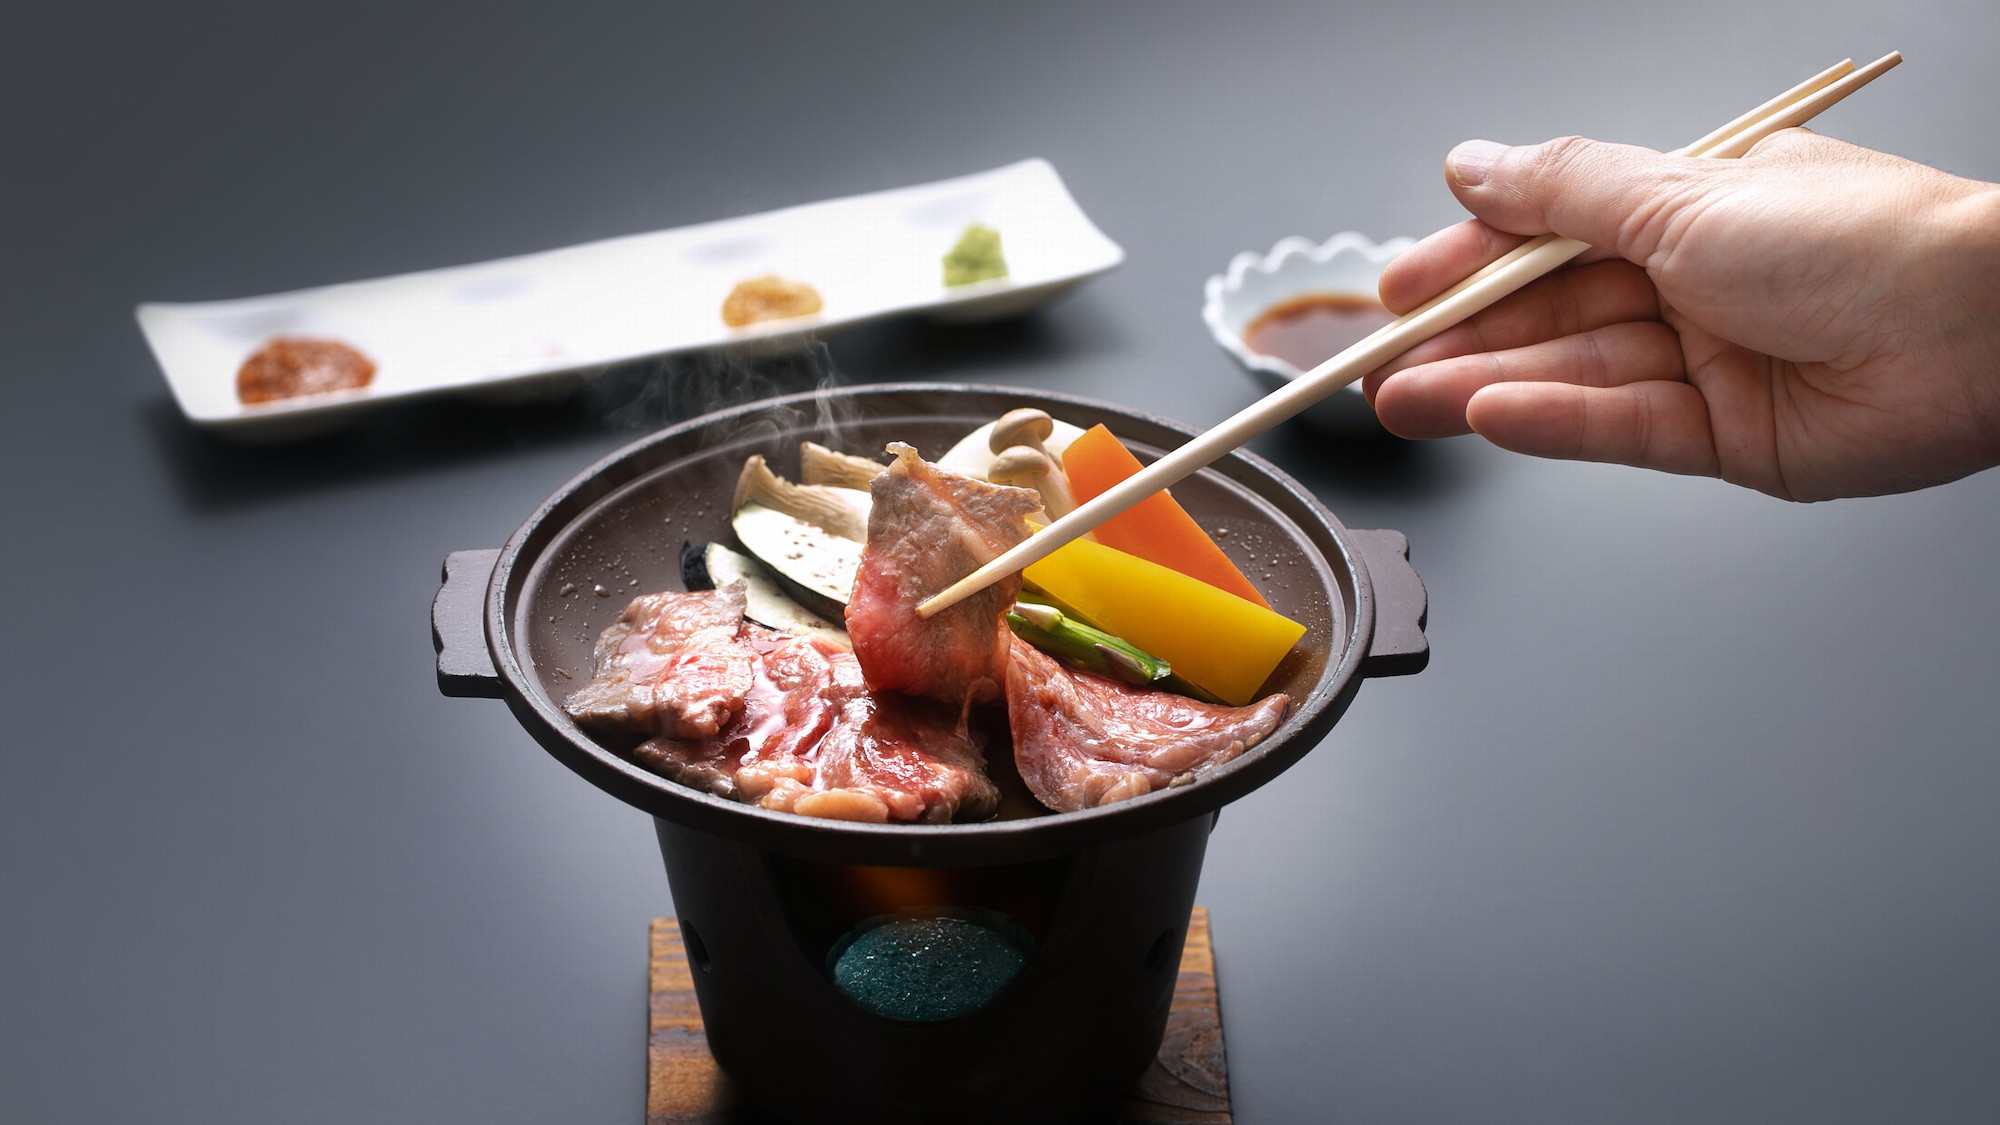 【追加料理】秋田牛サーロインと季節野菜の陶板焼き